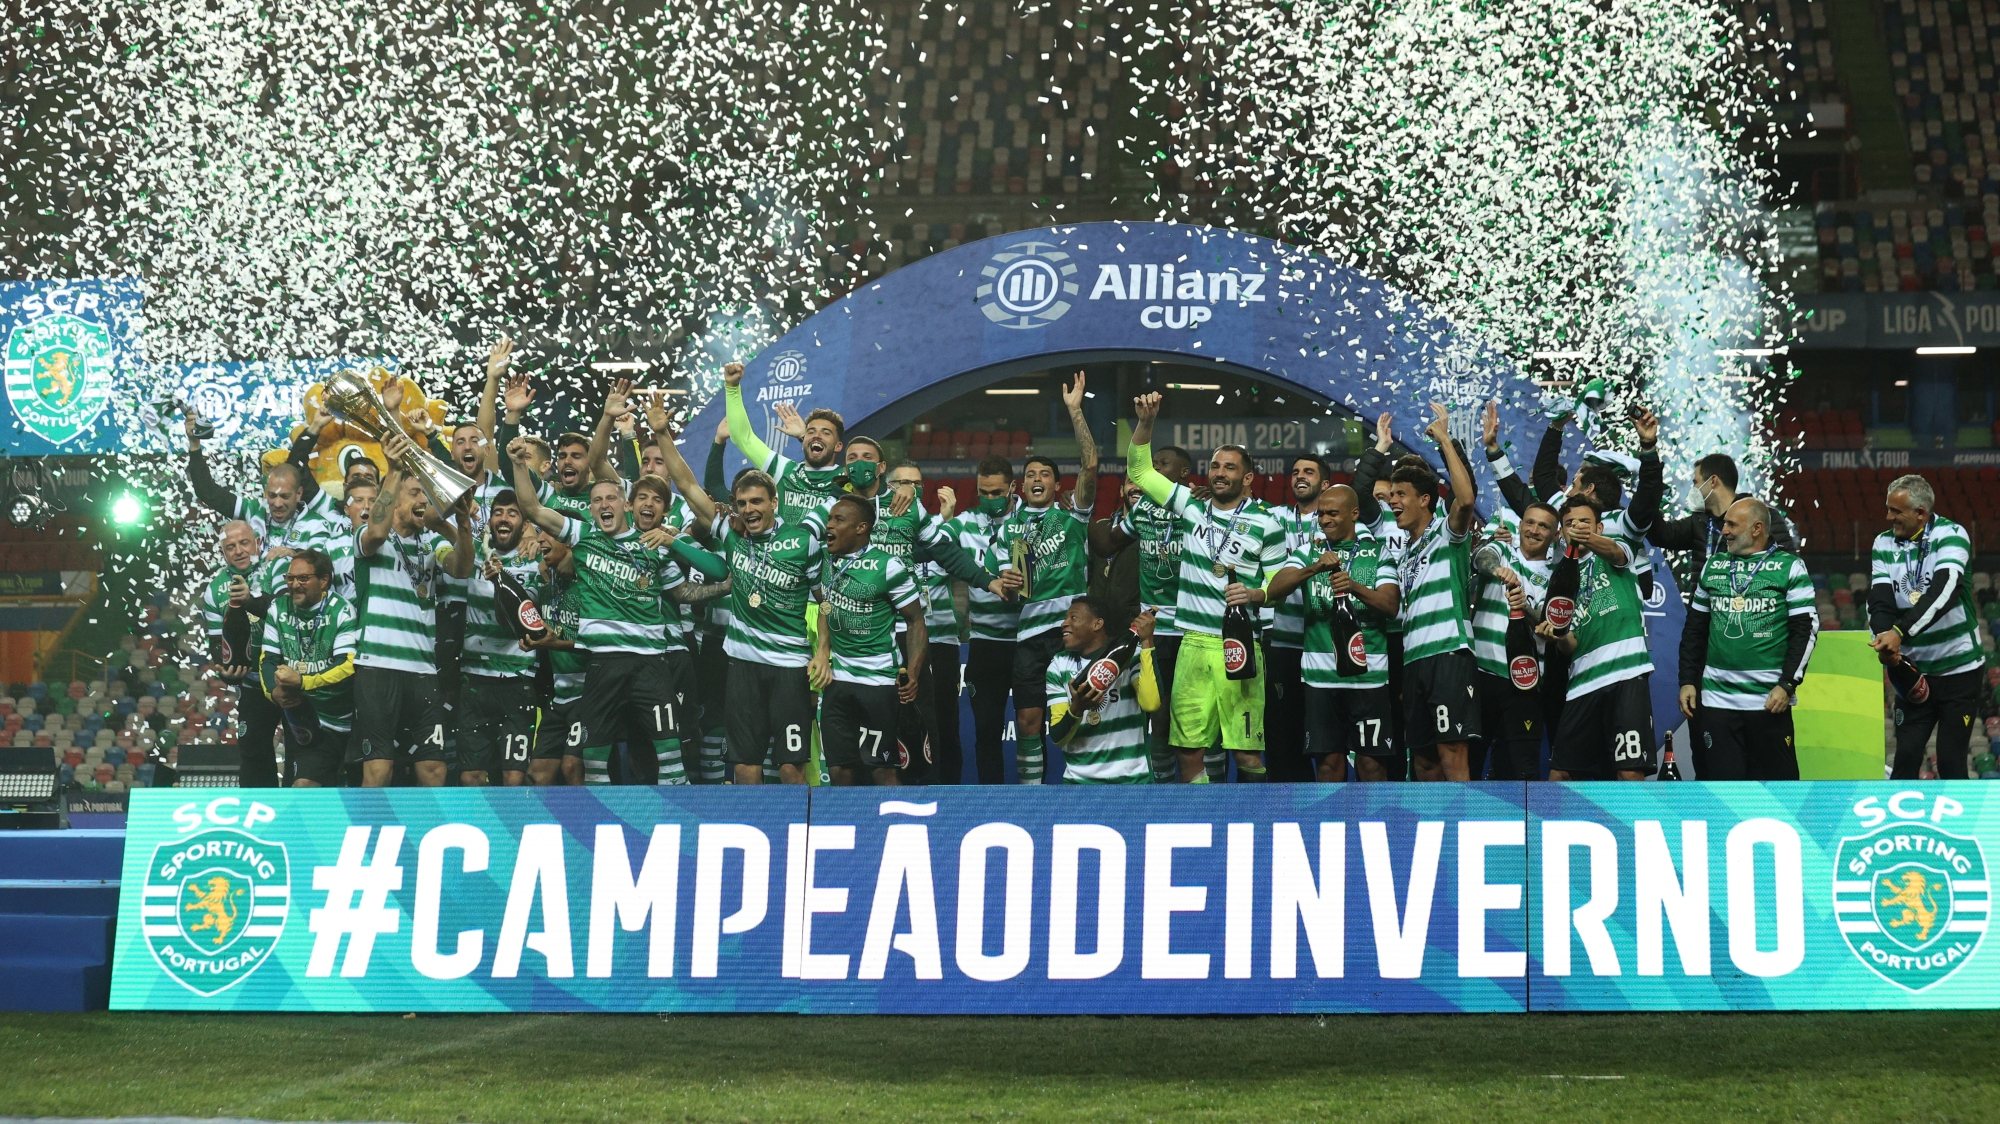 Depois das duas finais perdidas em 2008 e 2009, Sporting ganhou Taça da Liga em 2018, 2019 e 2021 – sendo que só na última não foi aos penáltis